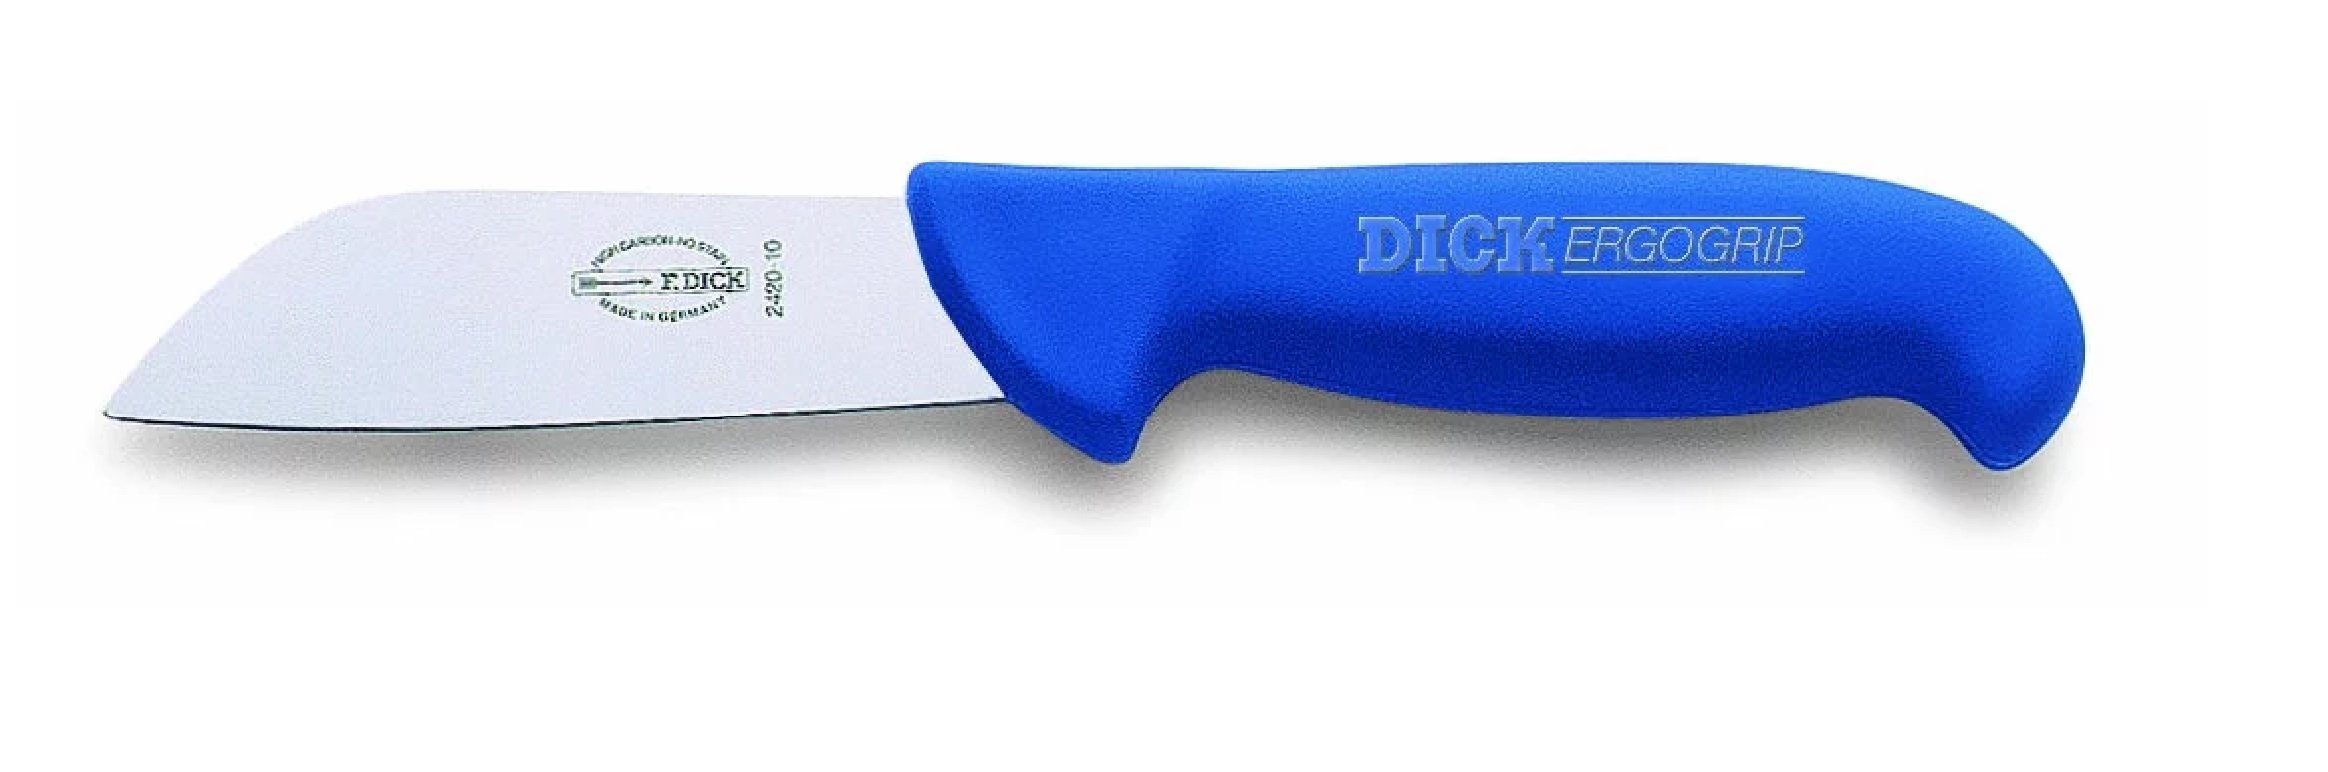 Dick Kochmesser Dick Fischmesser Messer cm ErgoGrip Klinge kurze 10 8242010